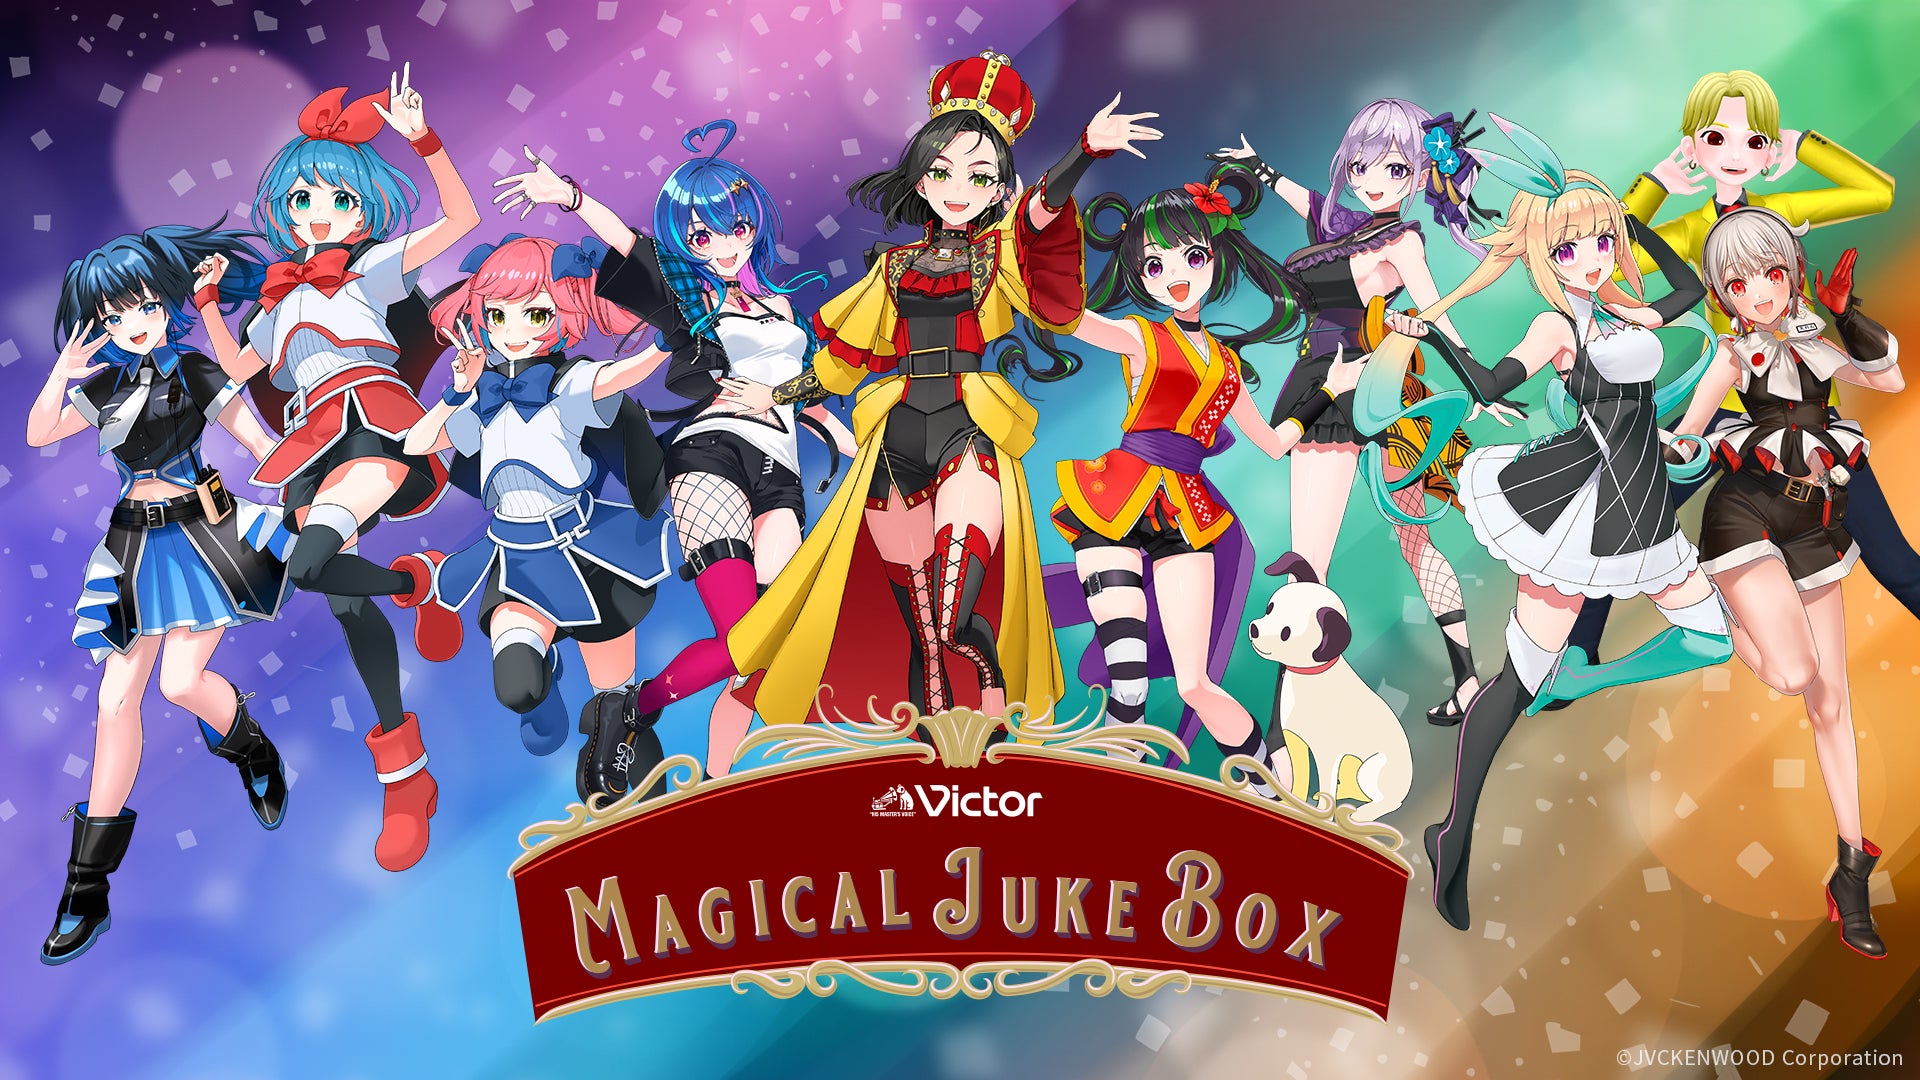 メタバース音楽ライブ「MAGICAL JUKE BOX」開催決定　VRChatの契約代行と有料チケットシステムをGugenkaが担当